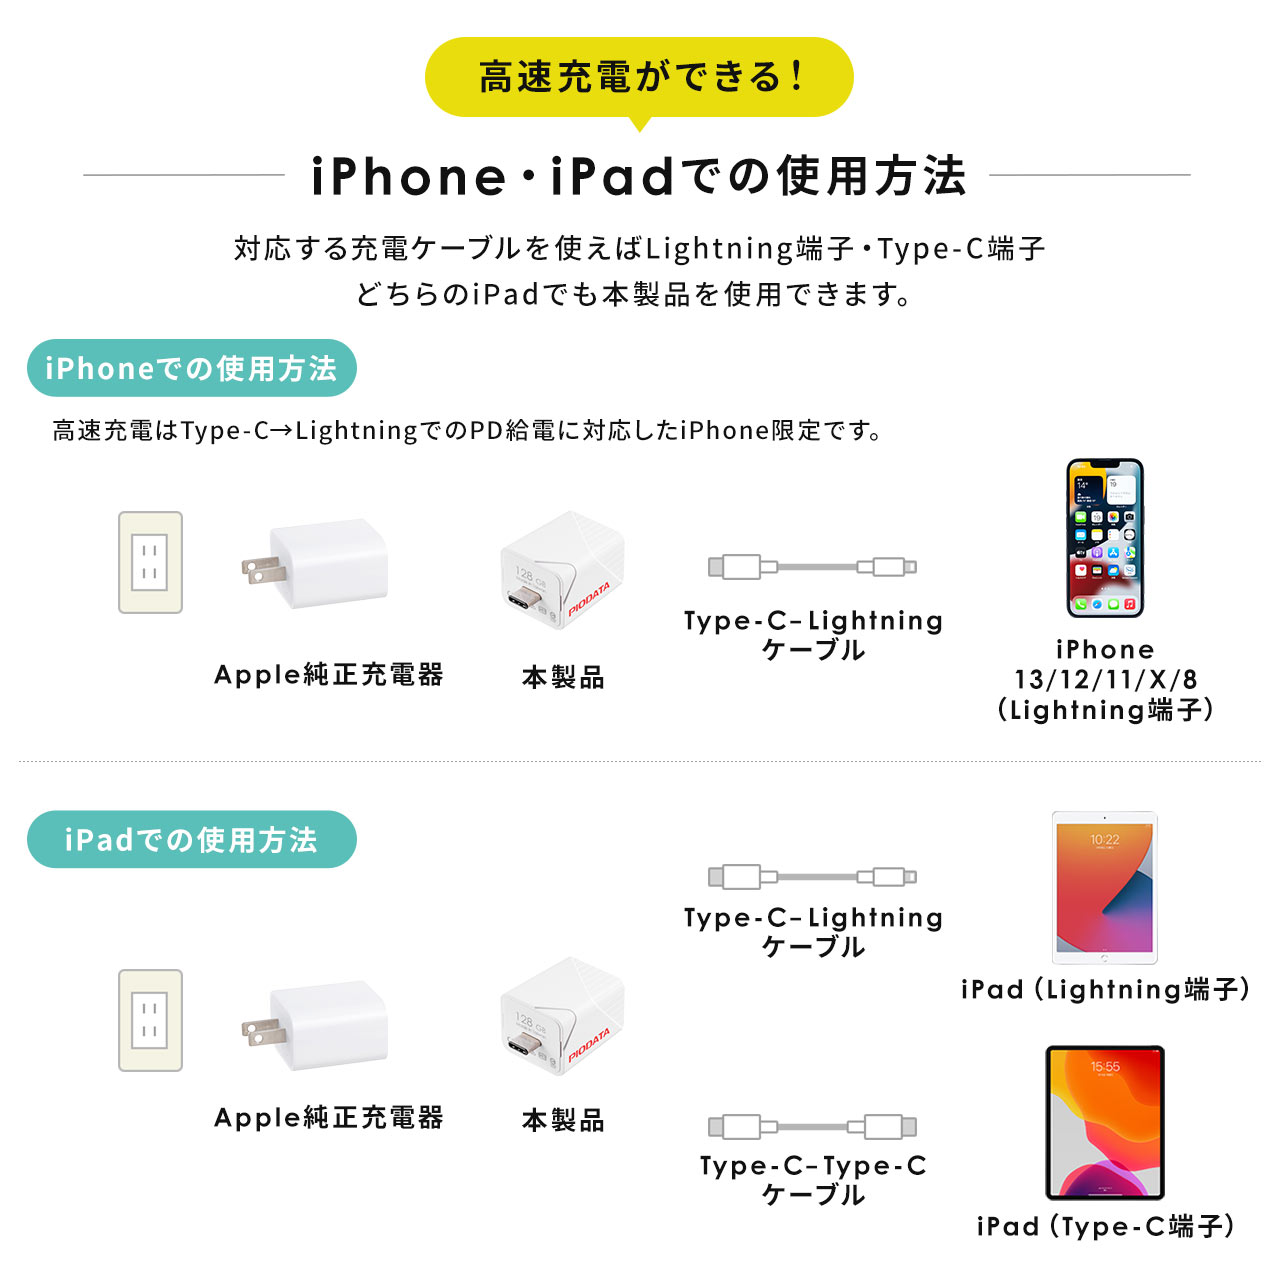 【メモリセール】iPhone iPad Lightning Type-C USBメモリ 1TB バックアップ データ転送 画像 動画 MFi認証 word excel 600-IPLC1TB3